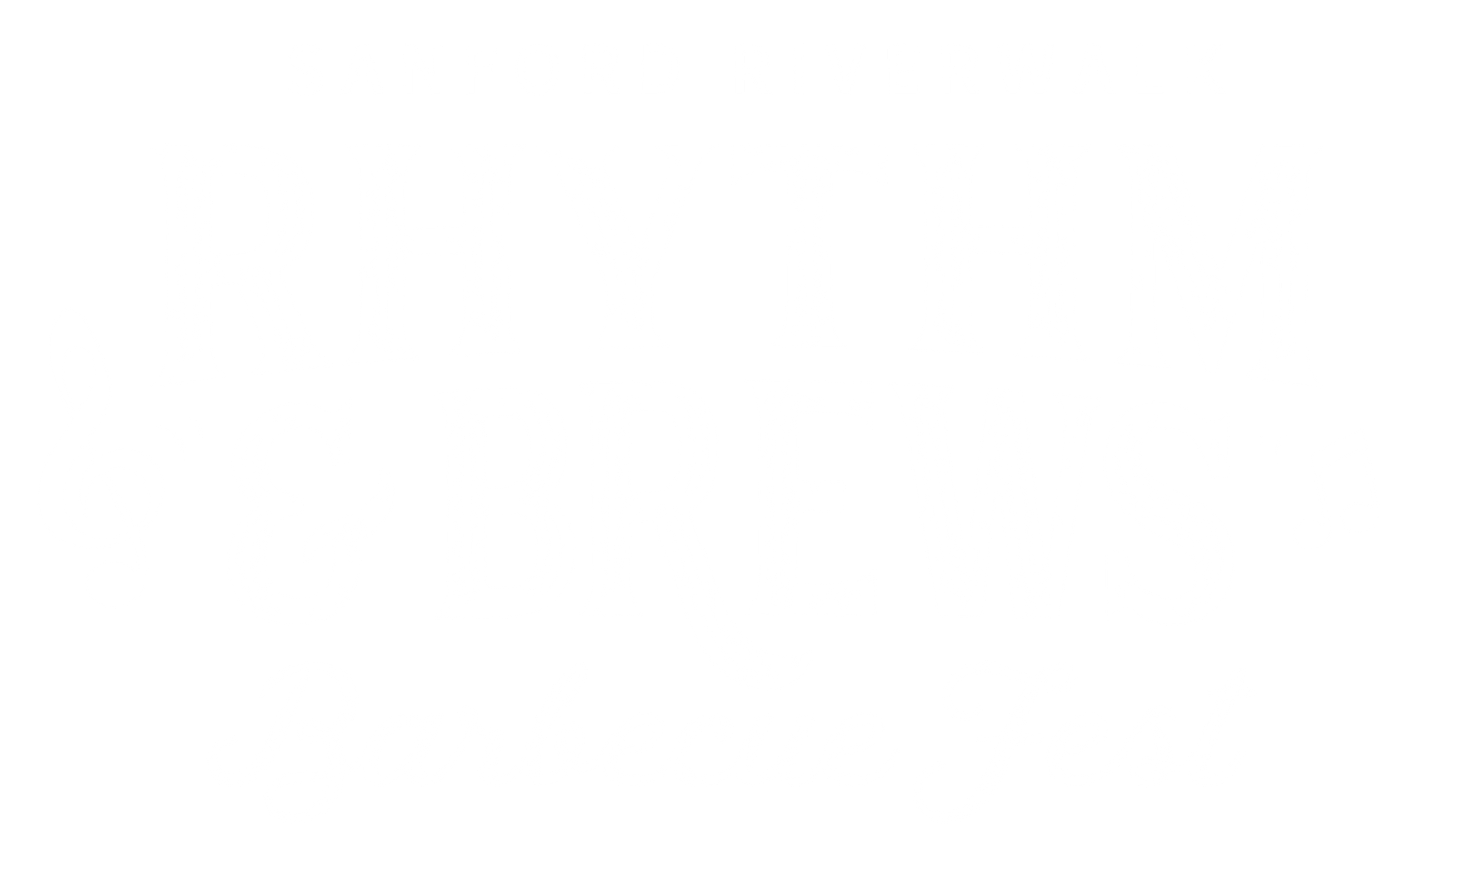 Sanford BBQ Fest - Rhythm & Brews Barbecue Fest